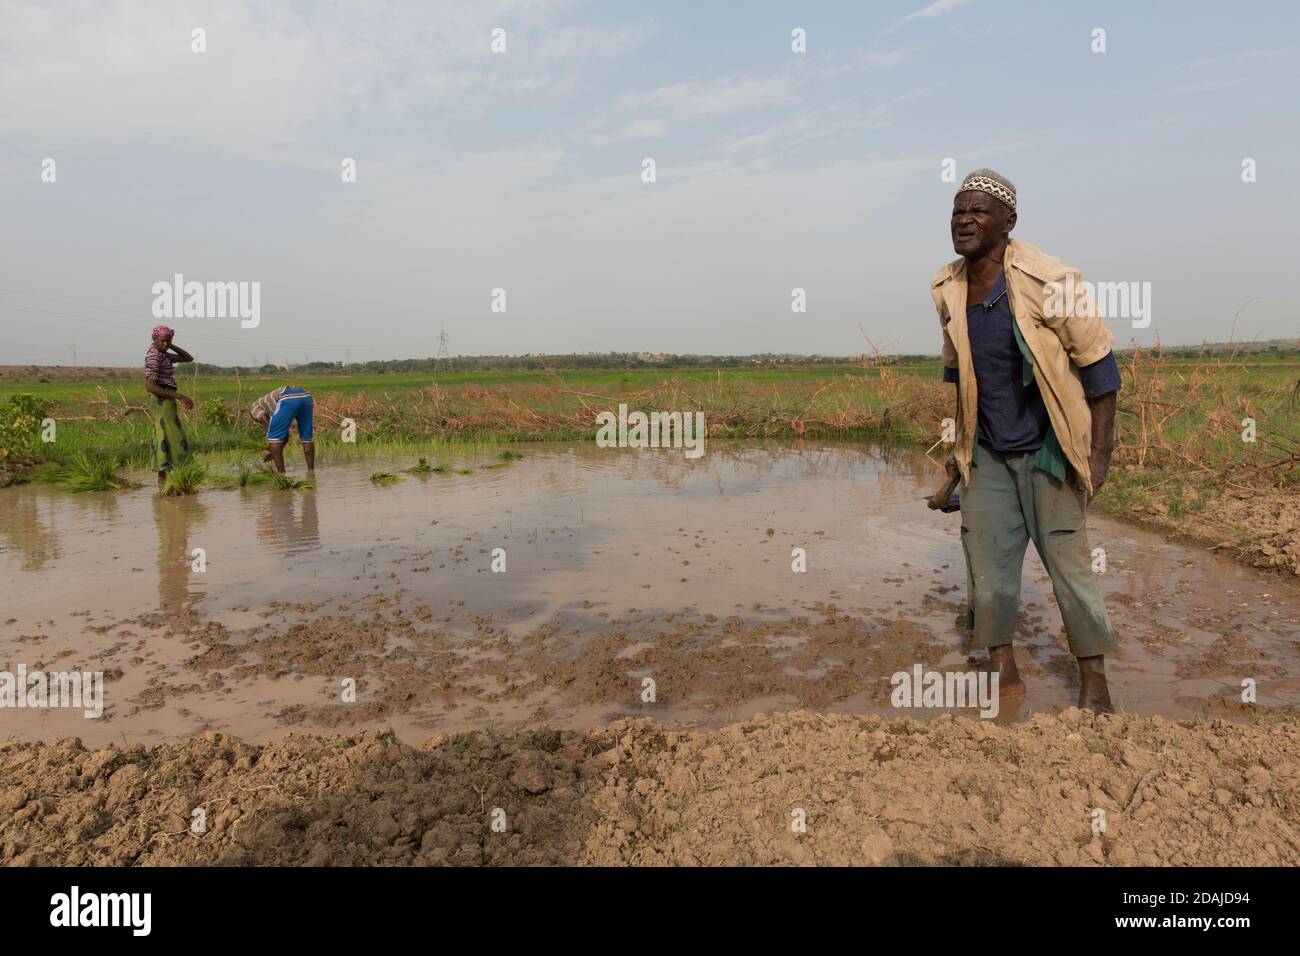 Selingue, Mali, 26 aprile 2015; Diola Coulibaly, 79 uomo dell'esercito in pensione, lavorando sulla sua trama di 0.04 ettari. La terra era un terreno giardino, ma l'ha cambiata per coltivare riso. Ha anche un ettaro di riso in un'altra parte di Selingue. Suo figlio Moussa Coulibaly, 19 anni, e sua moglie Mamou Coulibaly, 18 anni, lavorano con lui. Diola ha una pensione militare e i suoi figli fanno la maggior parte del lavoro. La famiglia condivide tutti i prodotti dell'agricoltura tra loro. Moussa lavora a tempo pieno sulla terra. Diola ha due mogli e 8 figli. Foto Stock